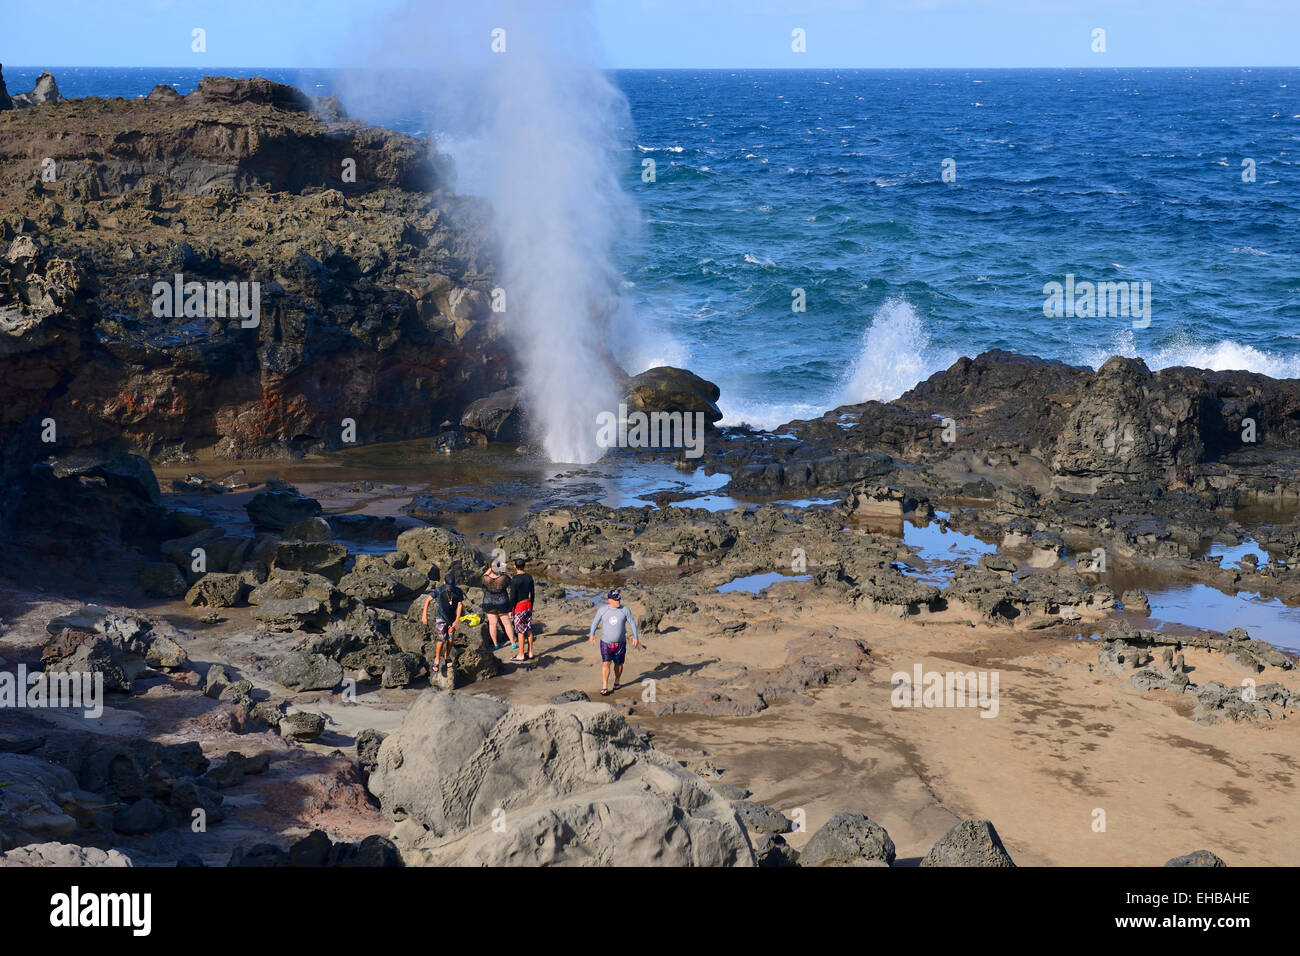 Blow hole at Nakalele Point, Maui, Hawaii, USA Stock Photo